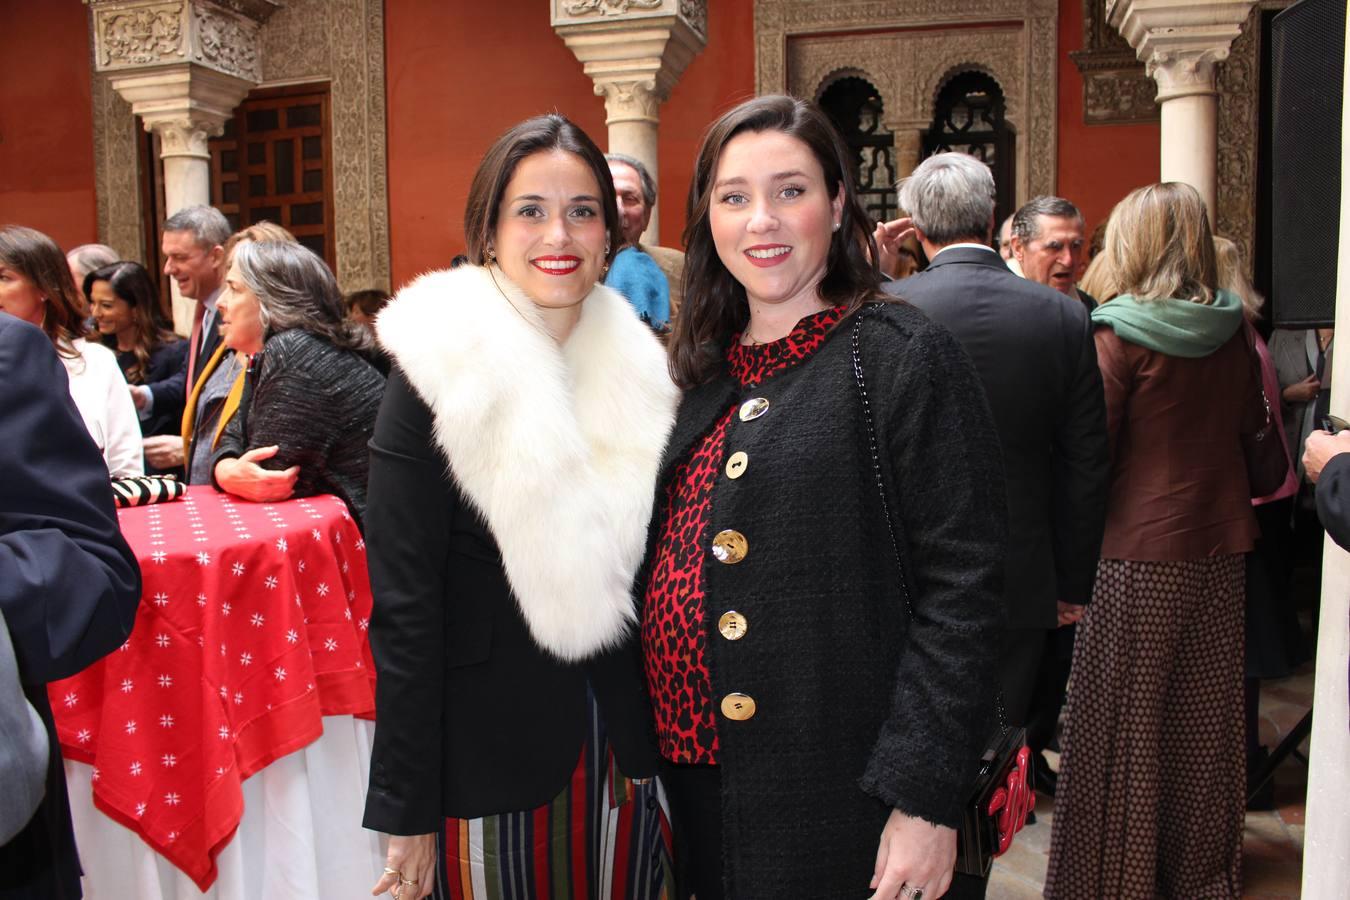 María Cuquerella y Sonia Gálvez – Sánchez de Ibargüen